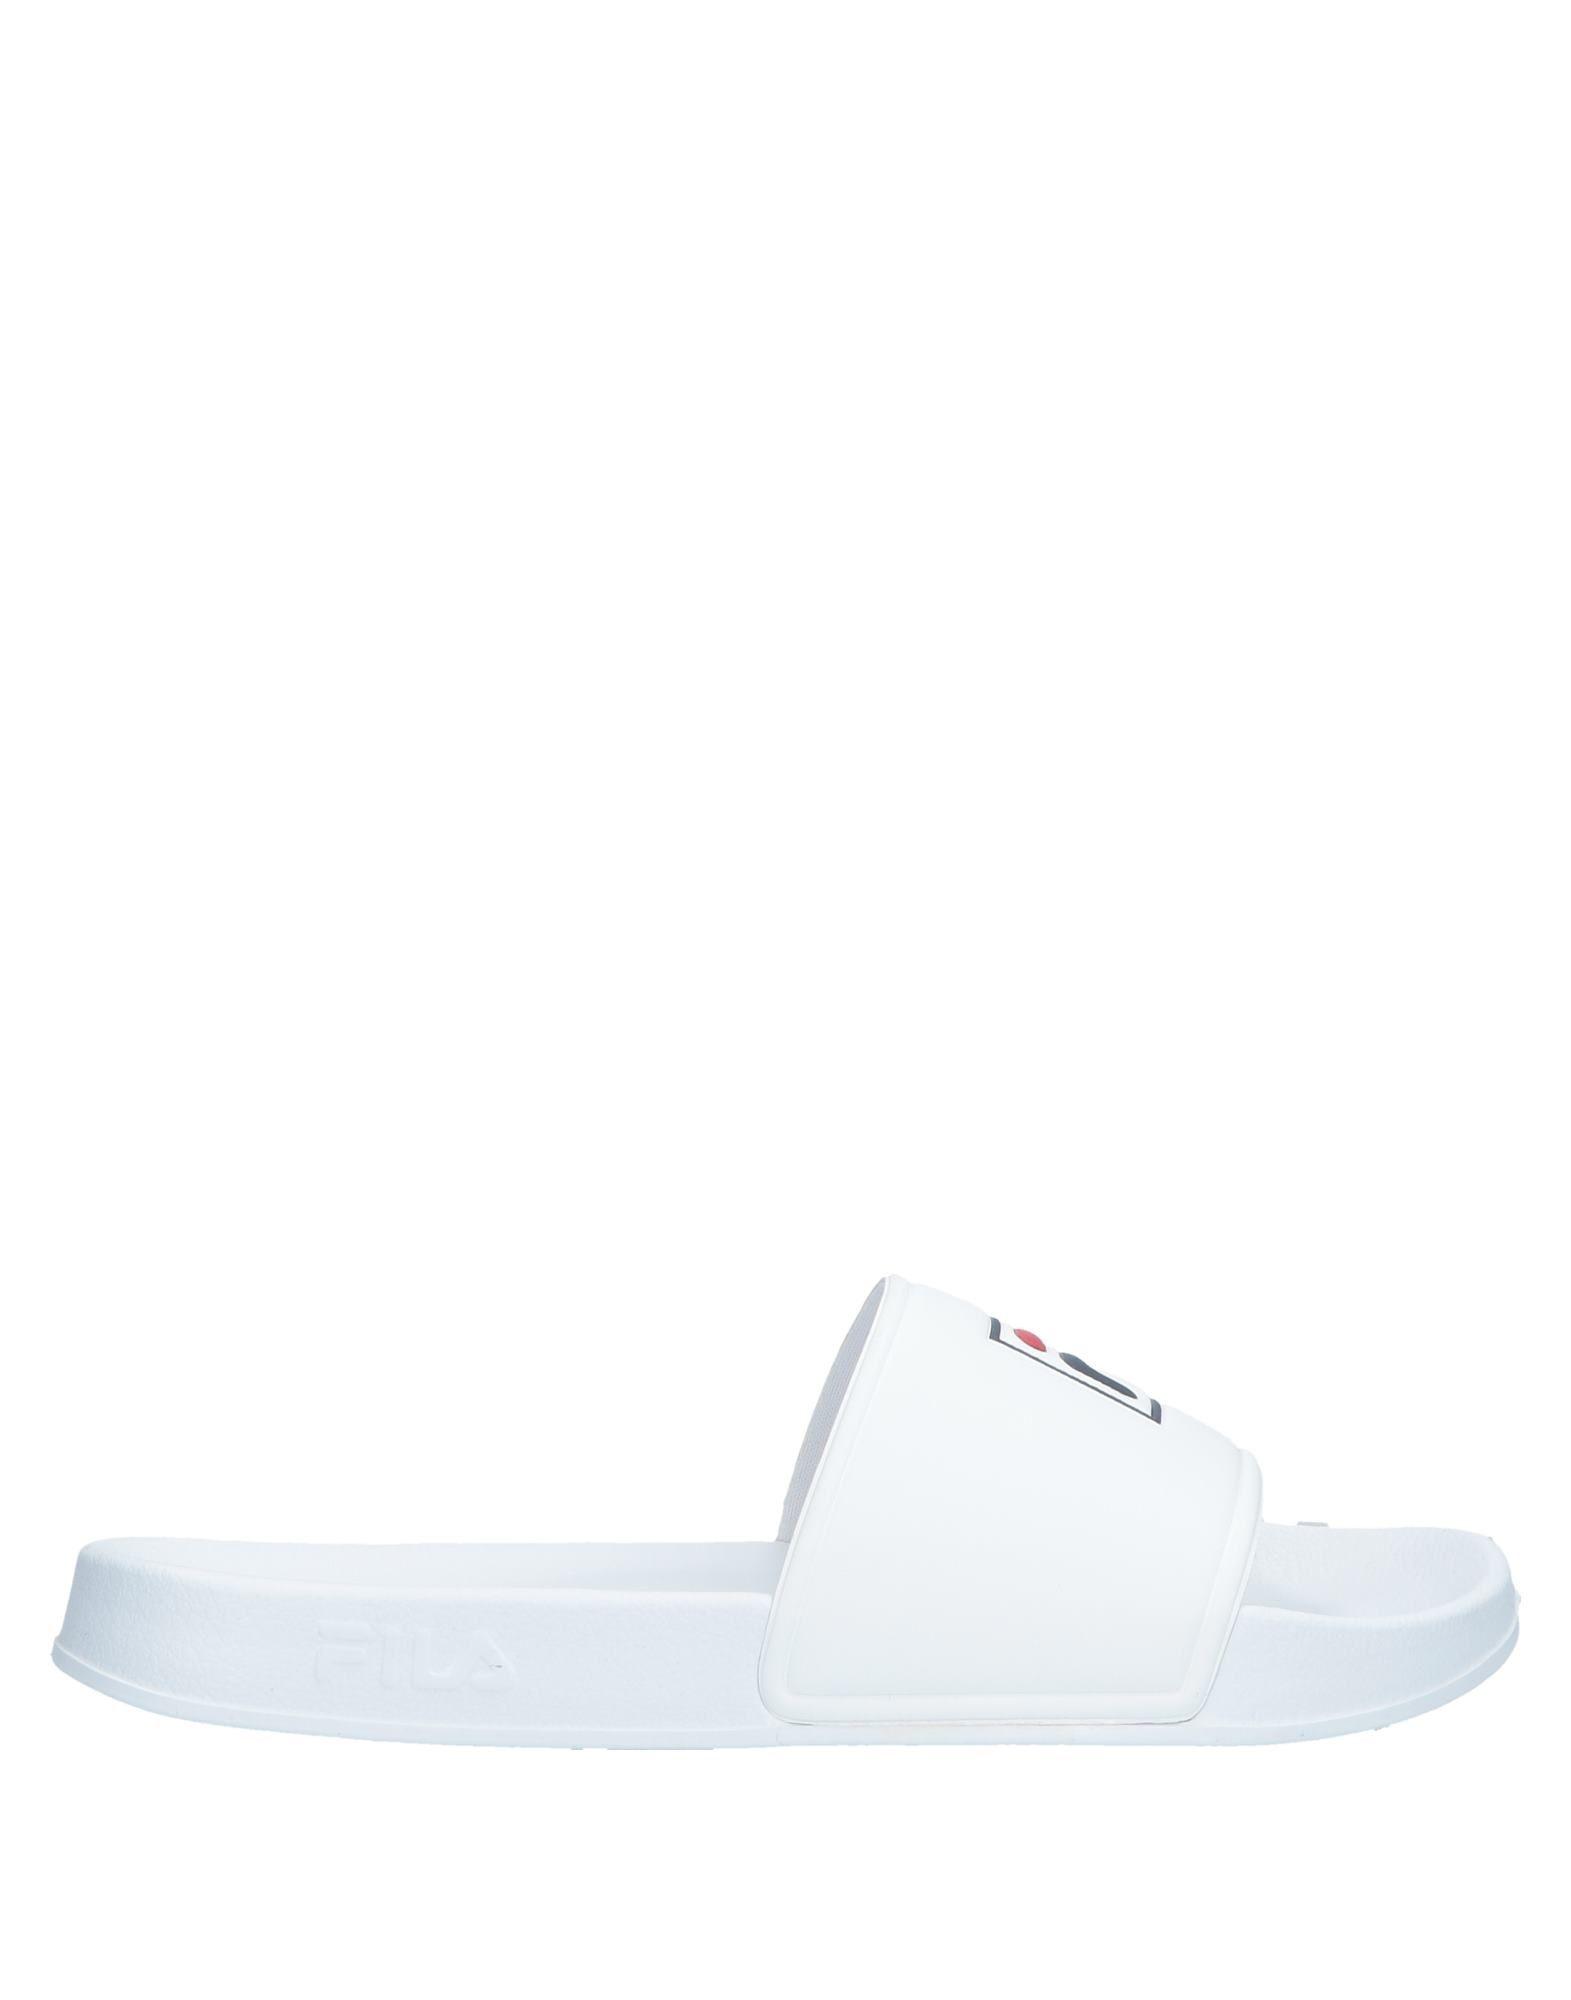 Fila Rubber Slippers in White for Men - Lyst